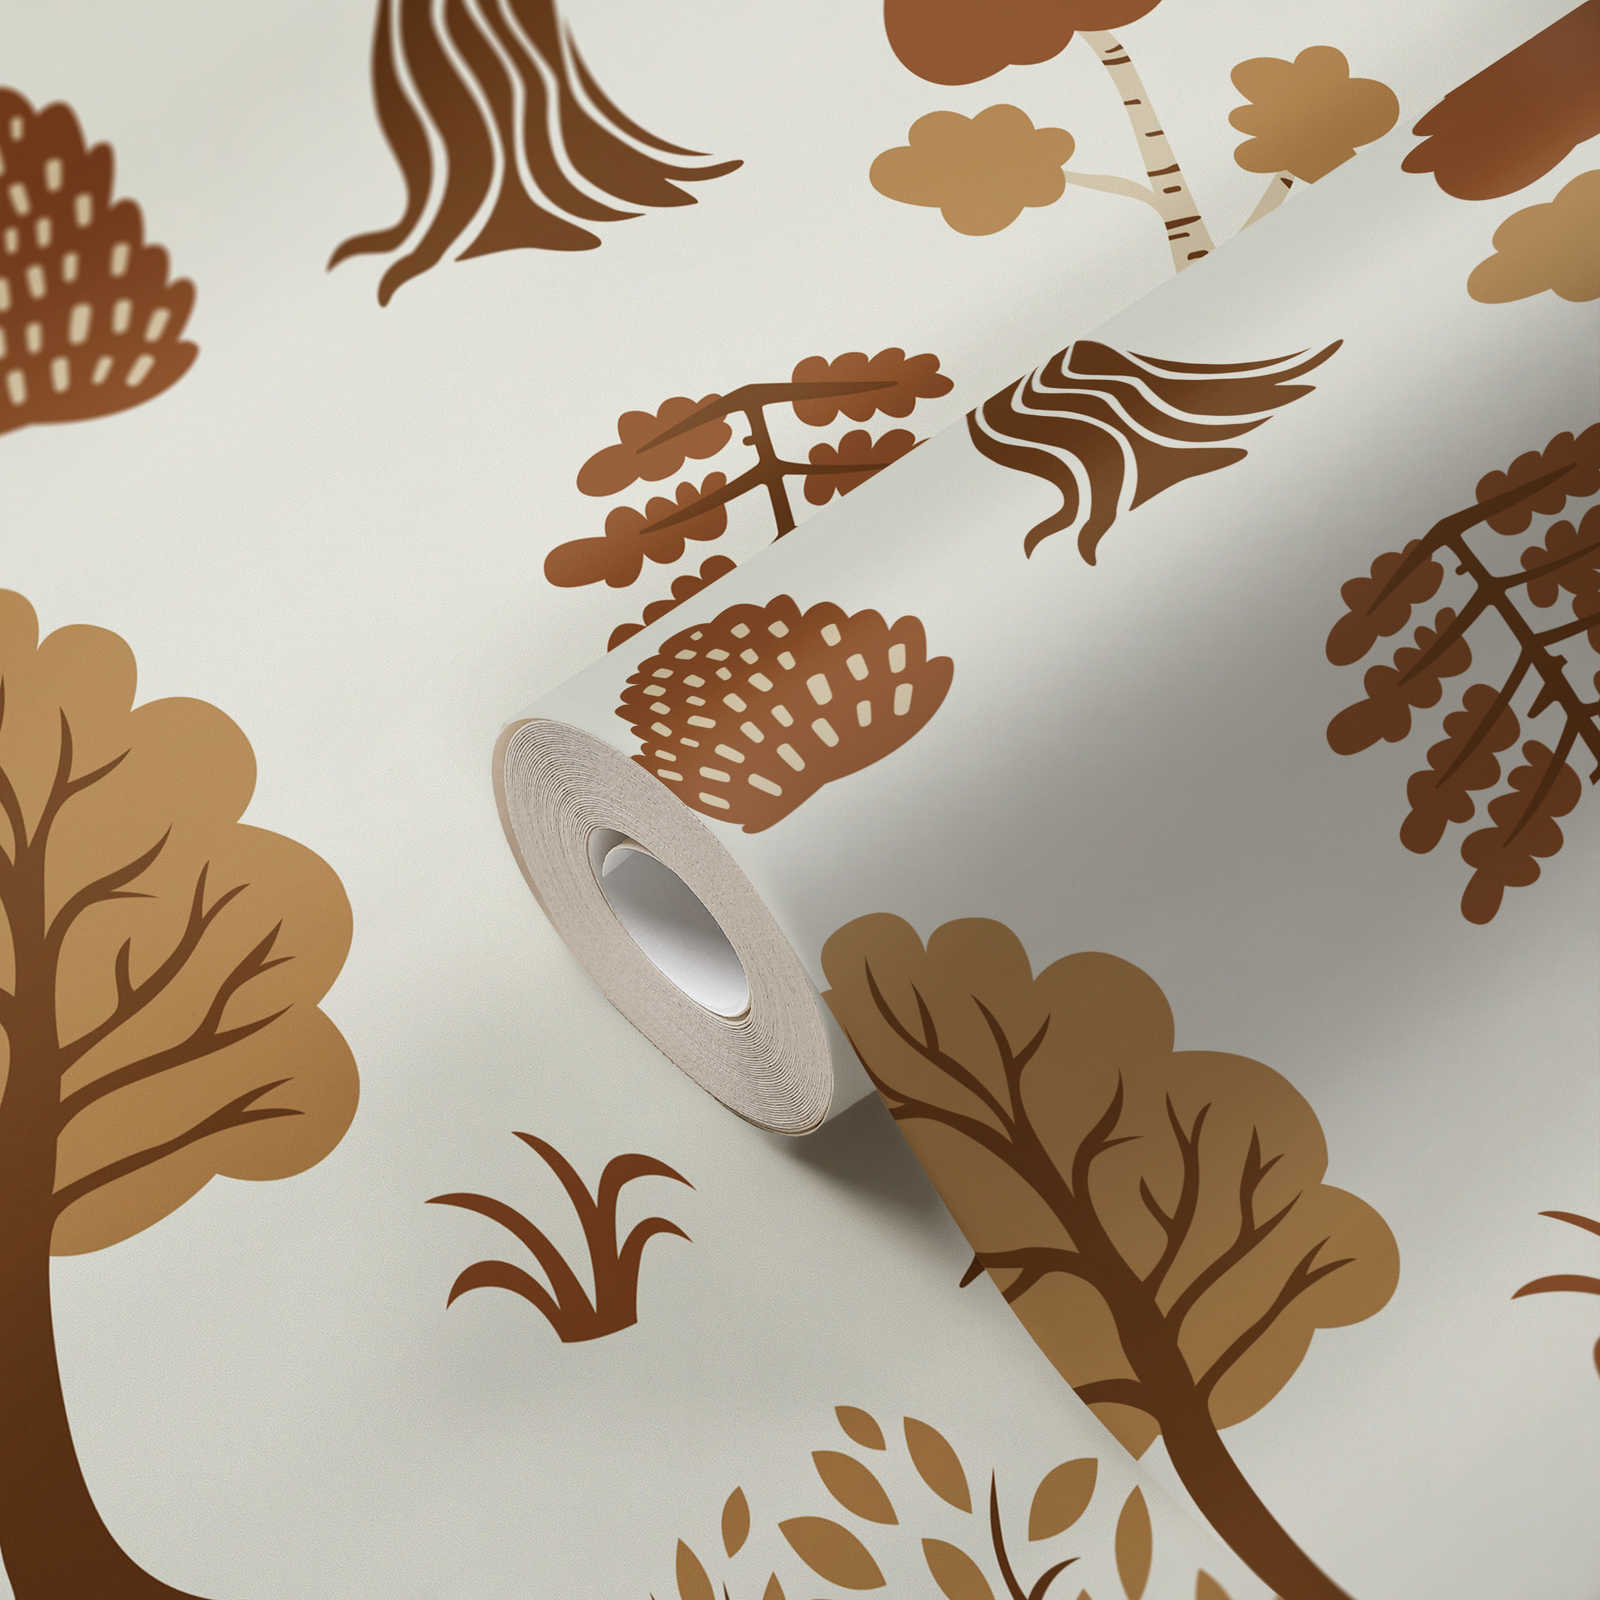             Wald-Motiv Vliestapete mit herbstlichen Bäumen – Creme, Braun
        